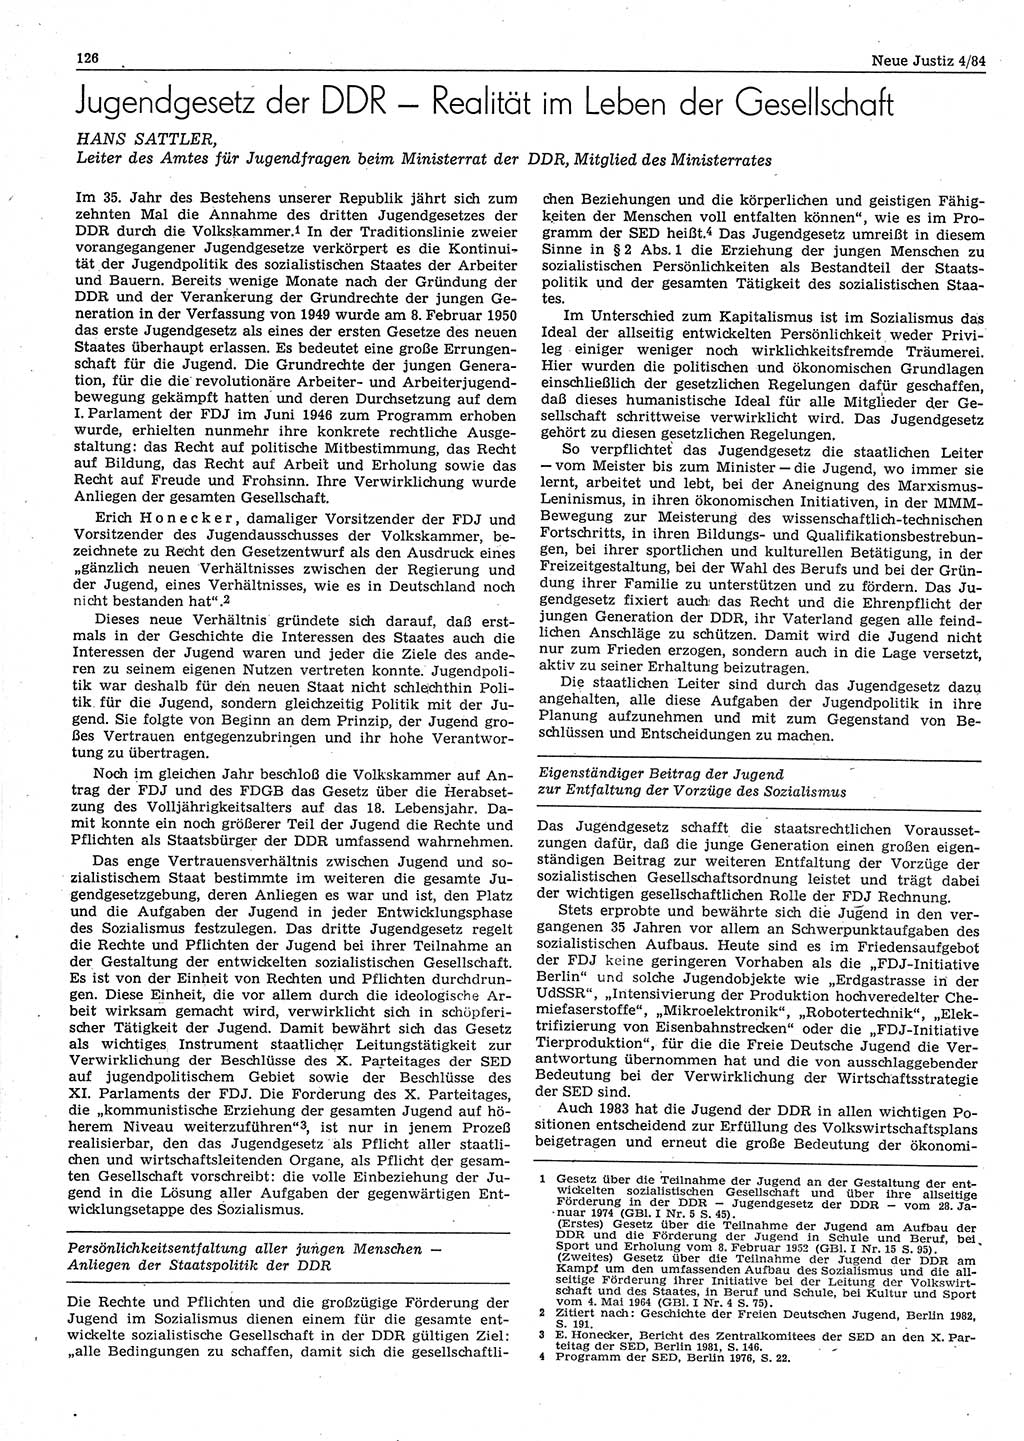 Neue Justiz (NJ), Zeitschrift für sozialistisches Recht und Gesetzlichkeit [Deutsche Demokratische Republik (DDR)], 38. Jahrgang 1984, Seite 126 (NJ DDR 1984, S. 126)